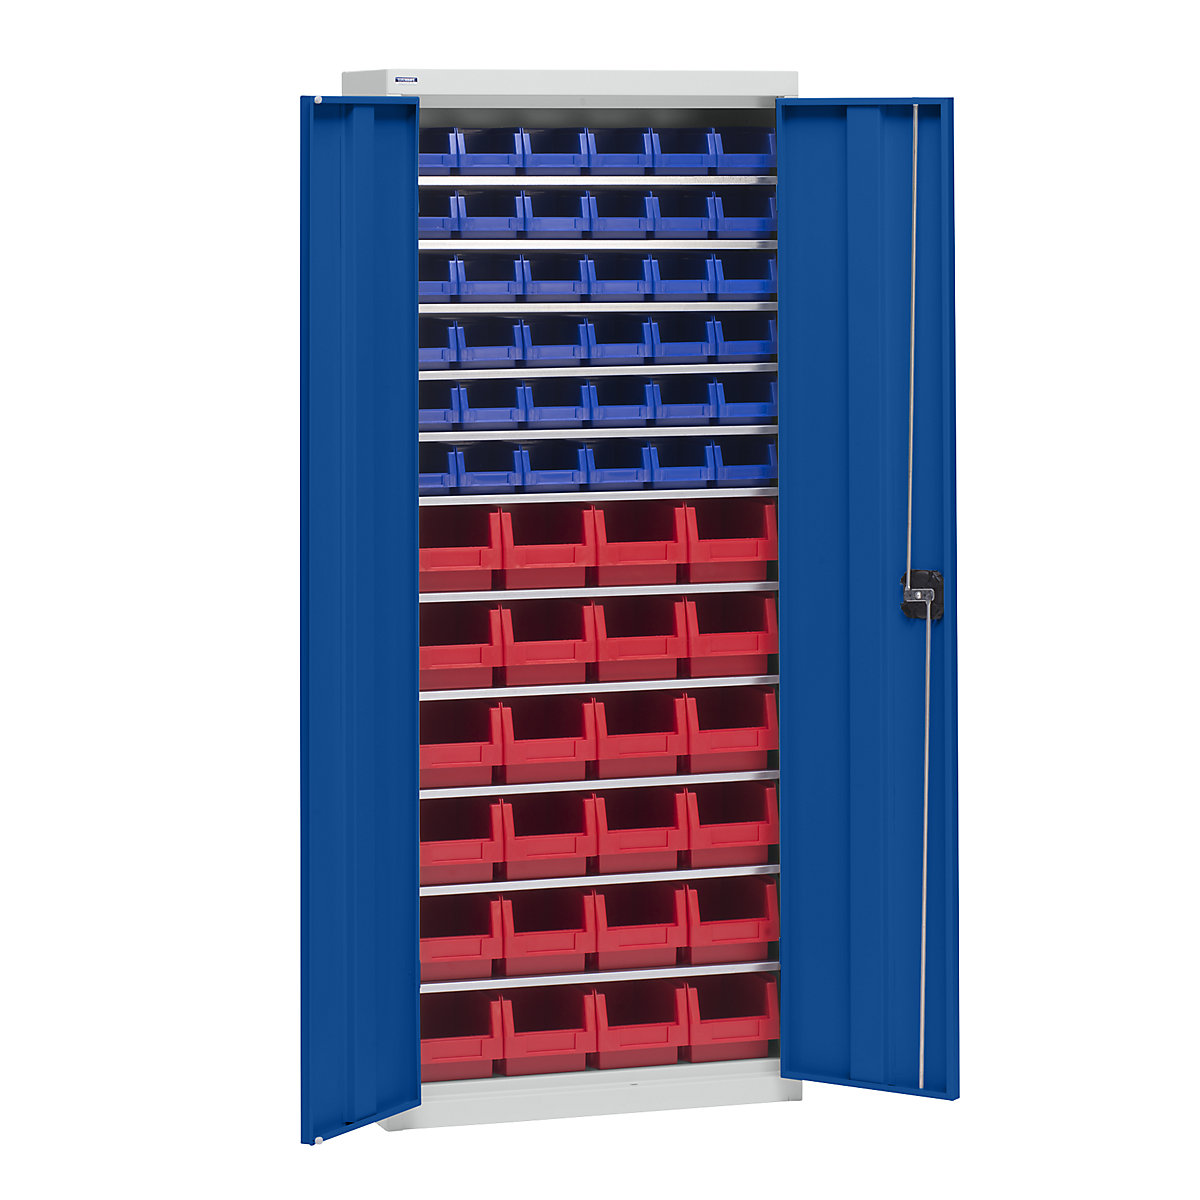 Materiaalkast met magazijnbakken – eurokraft pro, hoogte 1575 mm, 11 legborden, lichtgrijs / gentiaanblauw-4